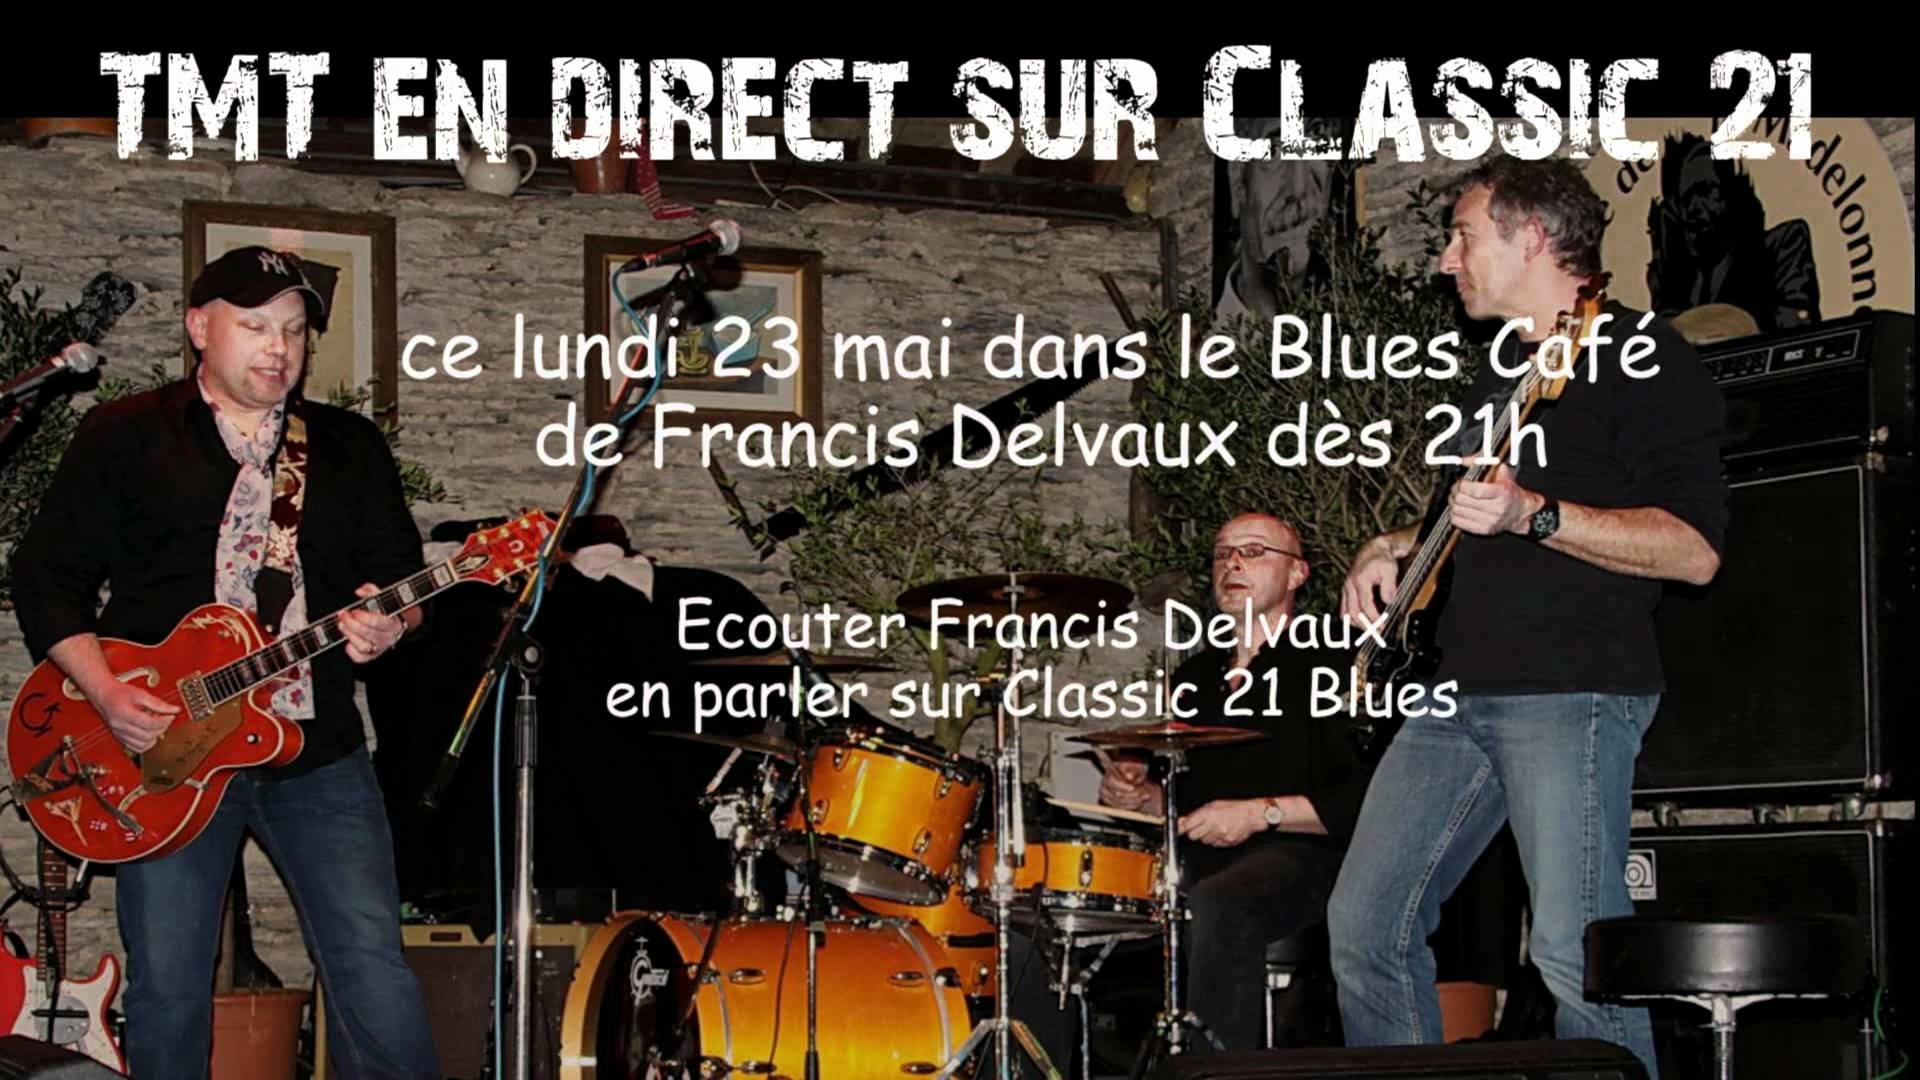 1920x1080 TMT en direct sur Classic 21 dans le Blues CafÃ© de Francis Delvaux